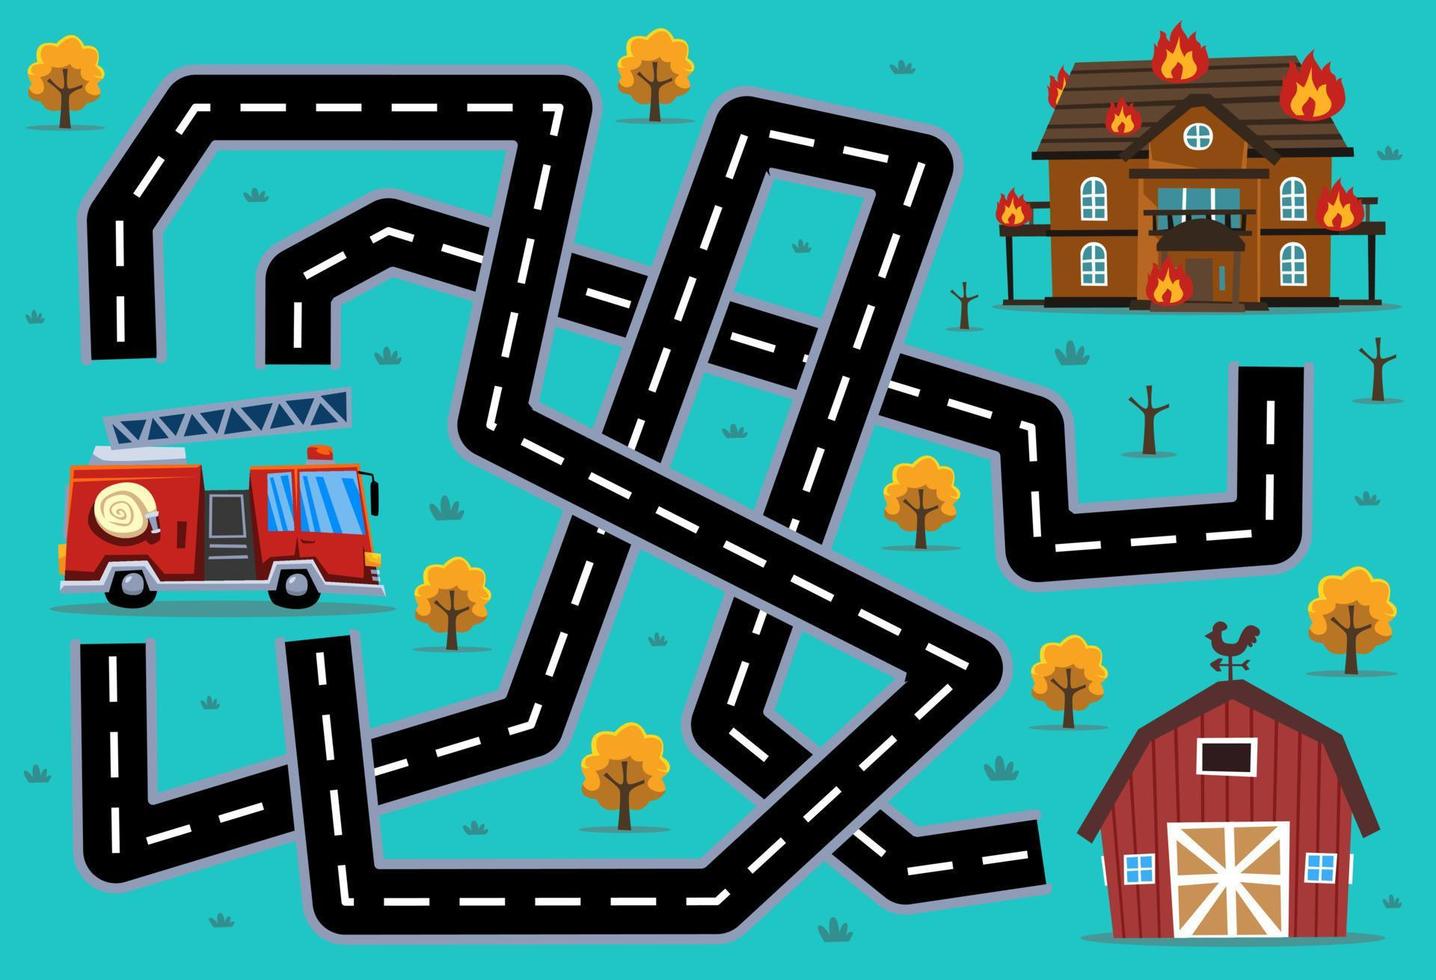 il gioco di puzzle labirinto per bambini aiuta il camion dei pompieri di trasporto di salvataggio dei cartoni animati a trovare la strada giusta per la caserma dei pompieri o il fienile vettore